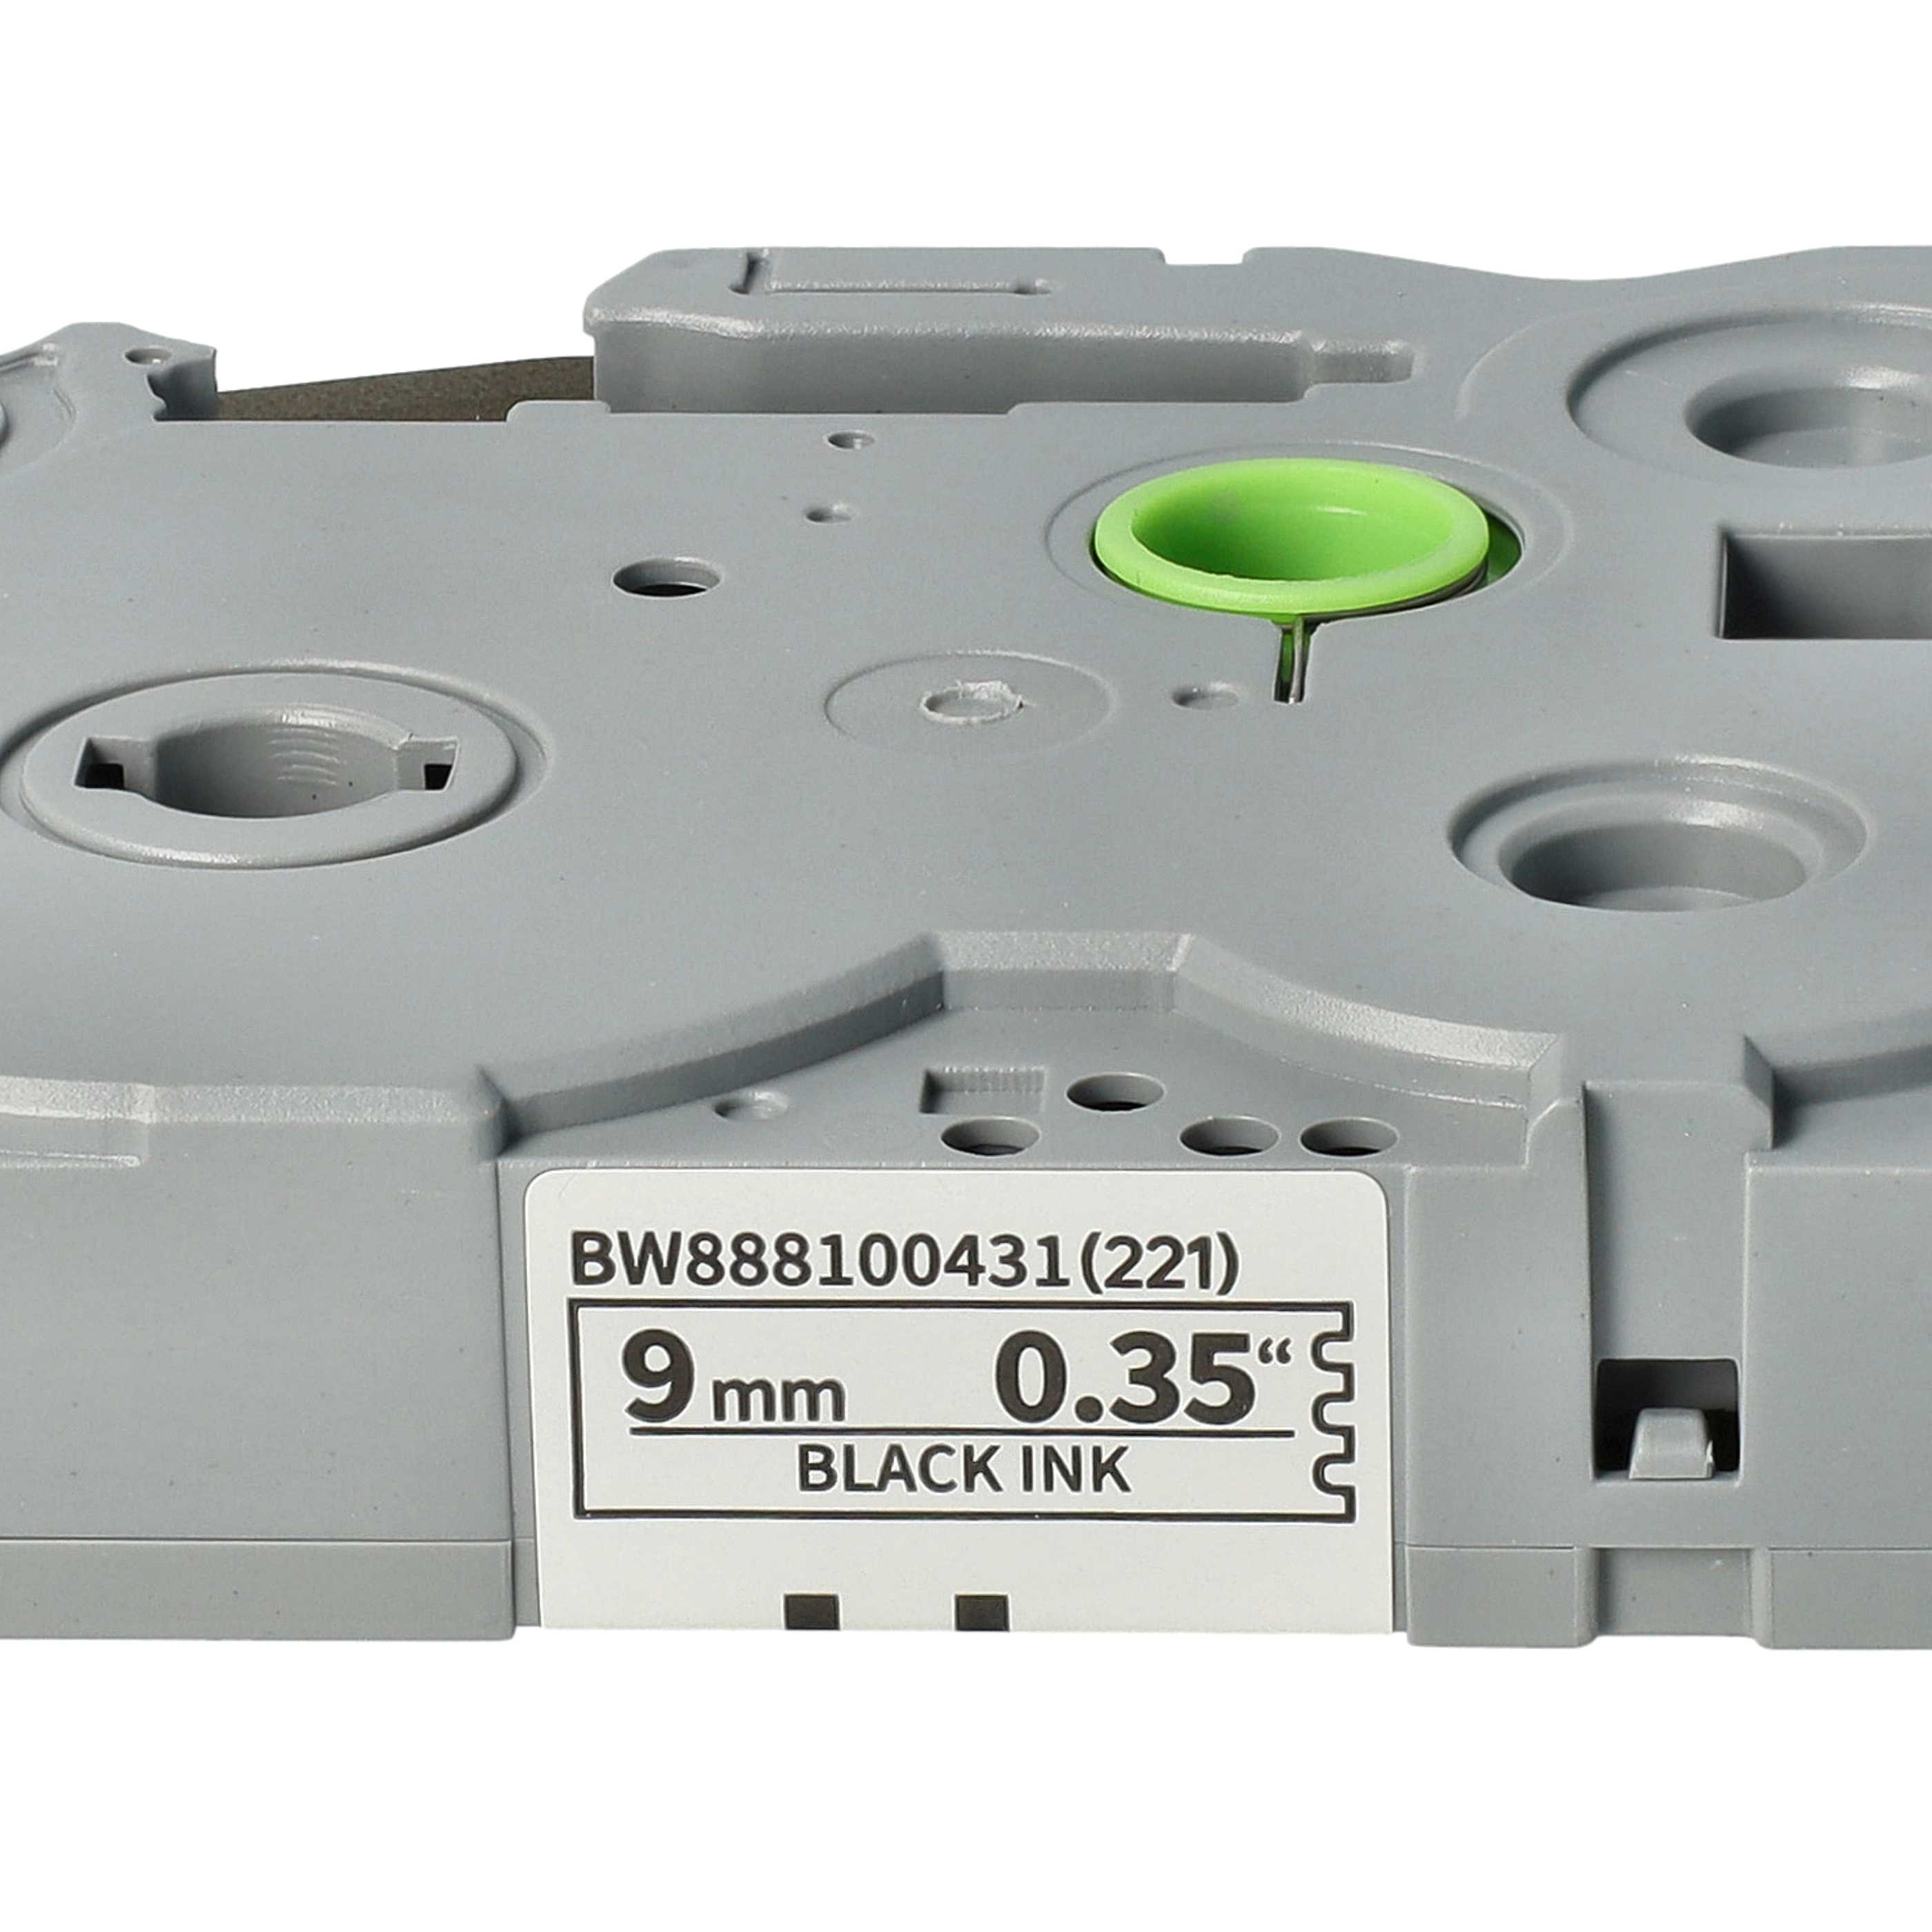 Cassetta nastro sostituisce Brother TZE-S221 per etichettatrice Brother 9mm nero su bianco, extra forte